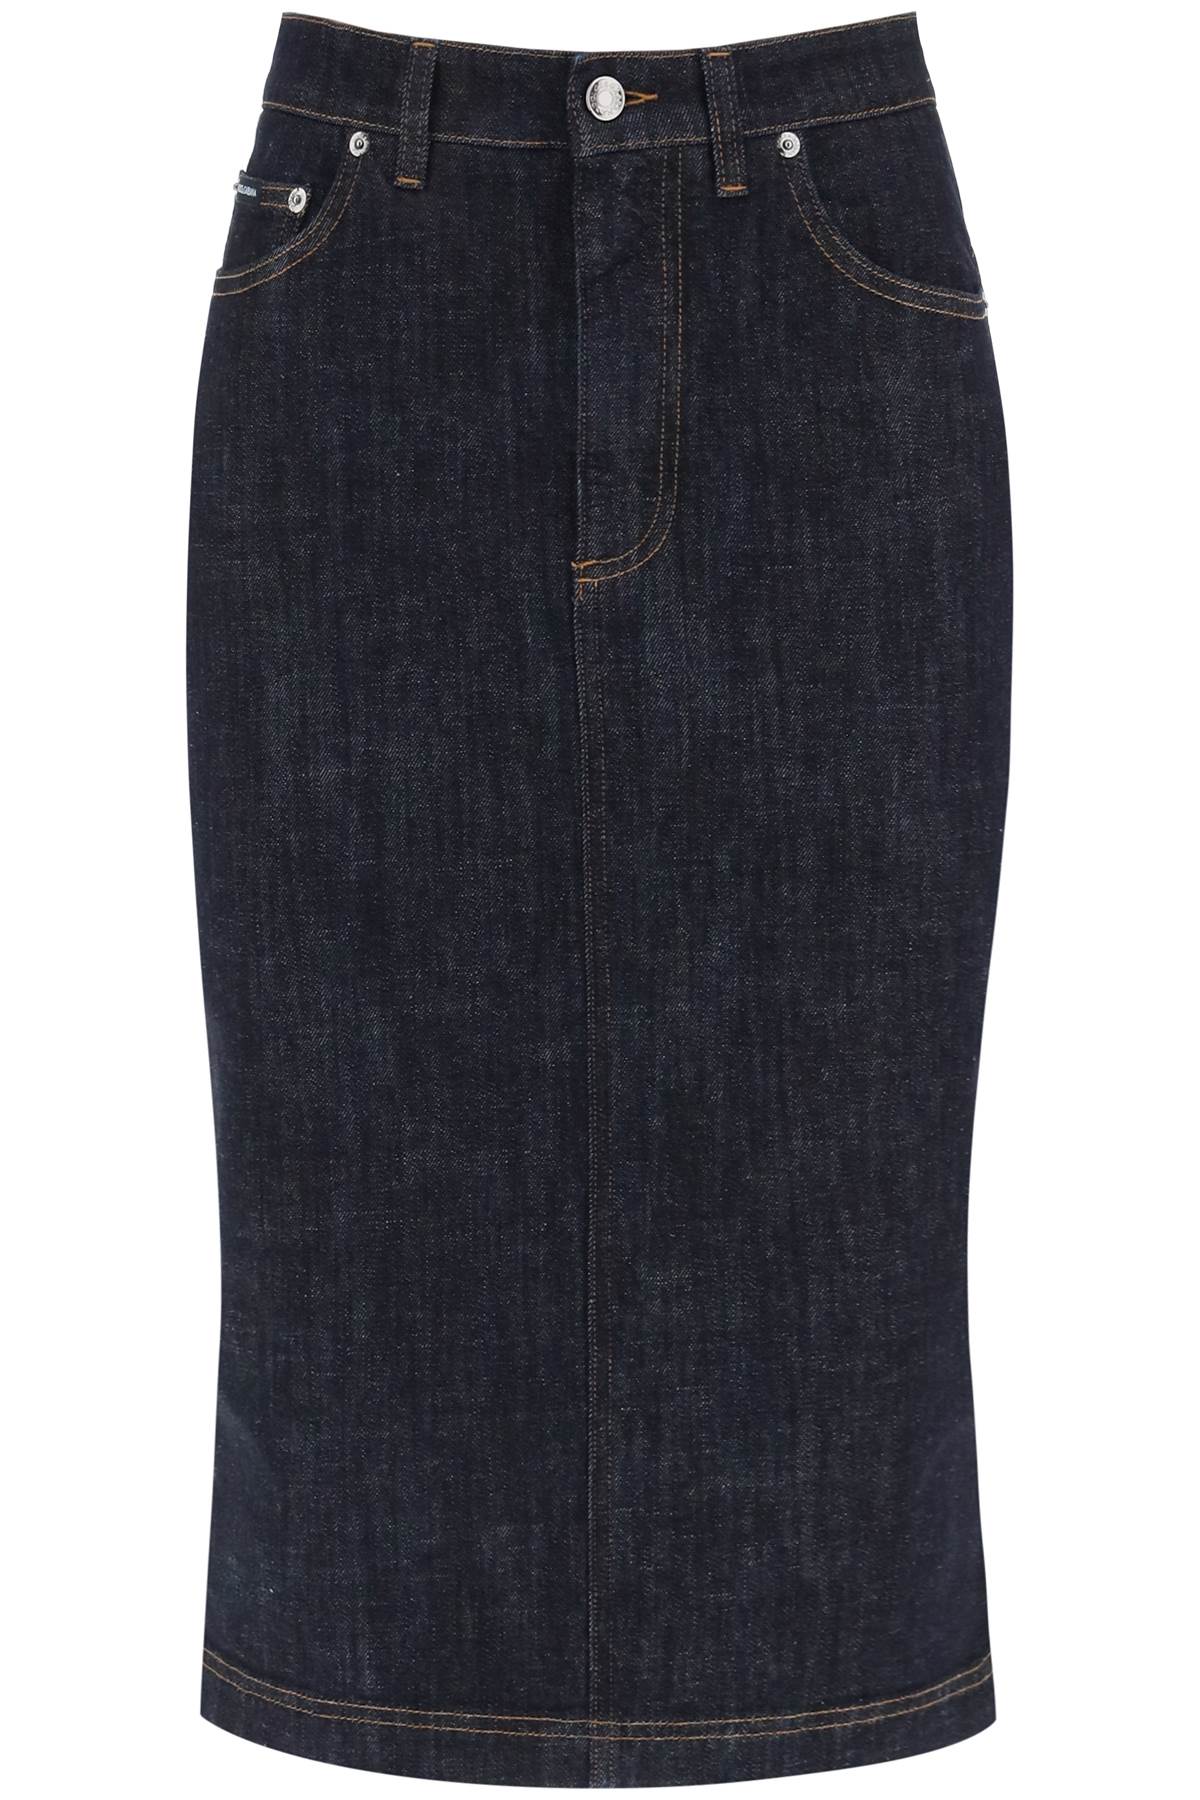 Shop Dolce & Gabbana Denim Pencil Skirt In Variante Abbinata (blue)